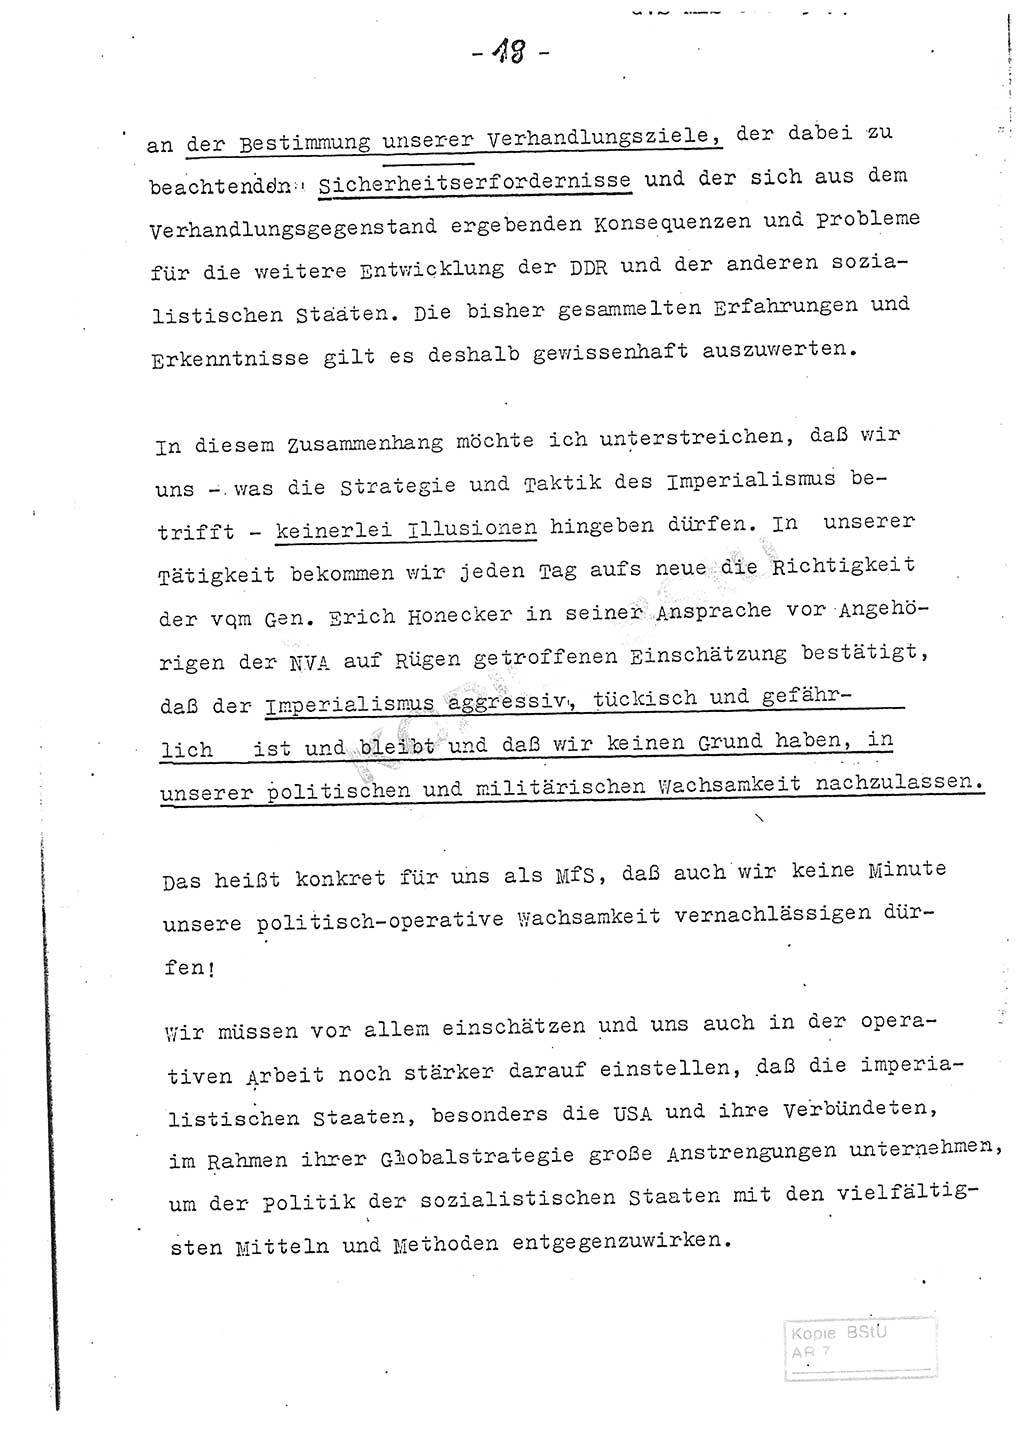 Referat (Entwurf) des Genossen Minister (Generaloberst Erich Mielke) auf der Dienstkonferenz 1972, Ministerium für Staatssicherheit (MfS) [Deutsche Demokratische Republik (DDR)], Der Minister, Geheime Verschlußsache (GVS) 008-150/72, Berlin 25.2.1972, Seite 18 (Ref. Entw. DK MfS DDR Min. GVS 008-150/72 1972, S. 18)